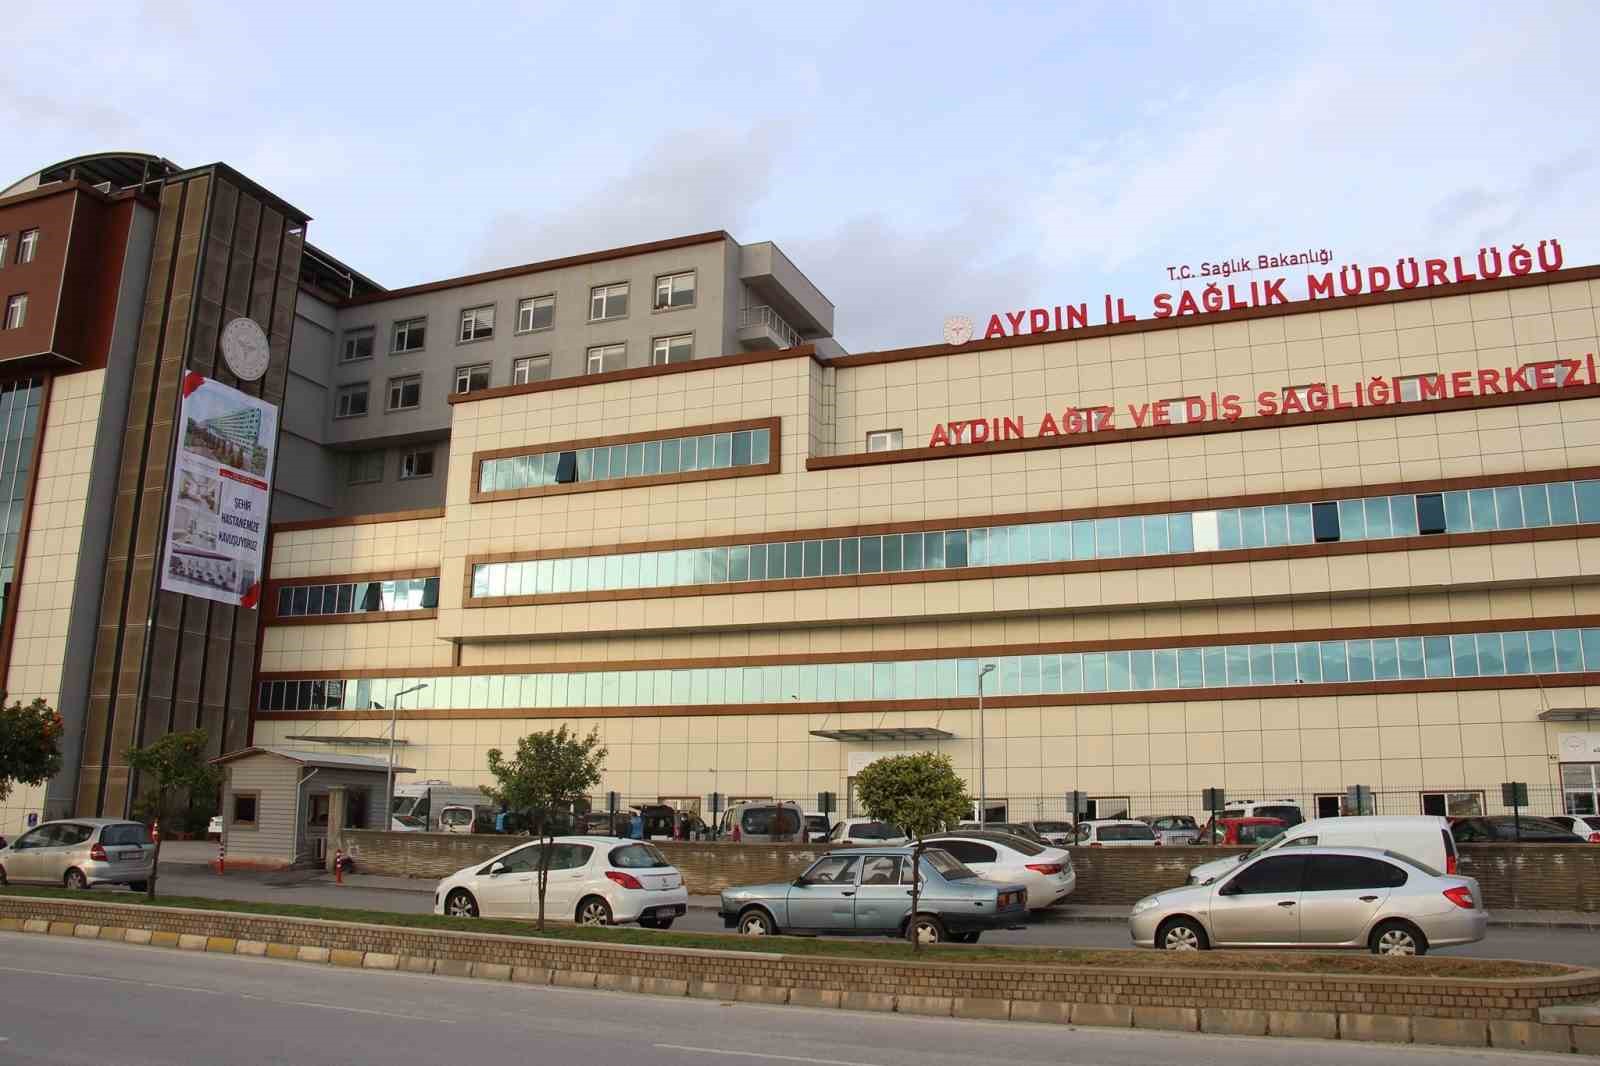 Aydın’da seçimde 260 sağlık personeli görev yapacak
